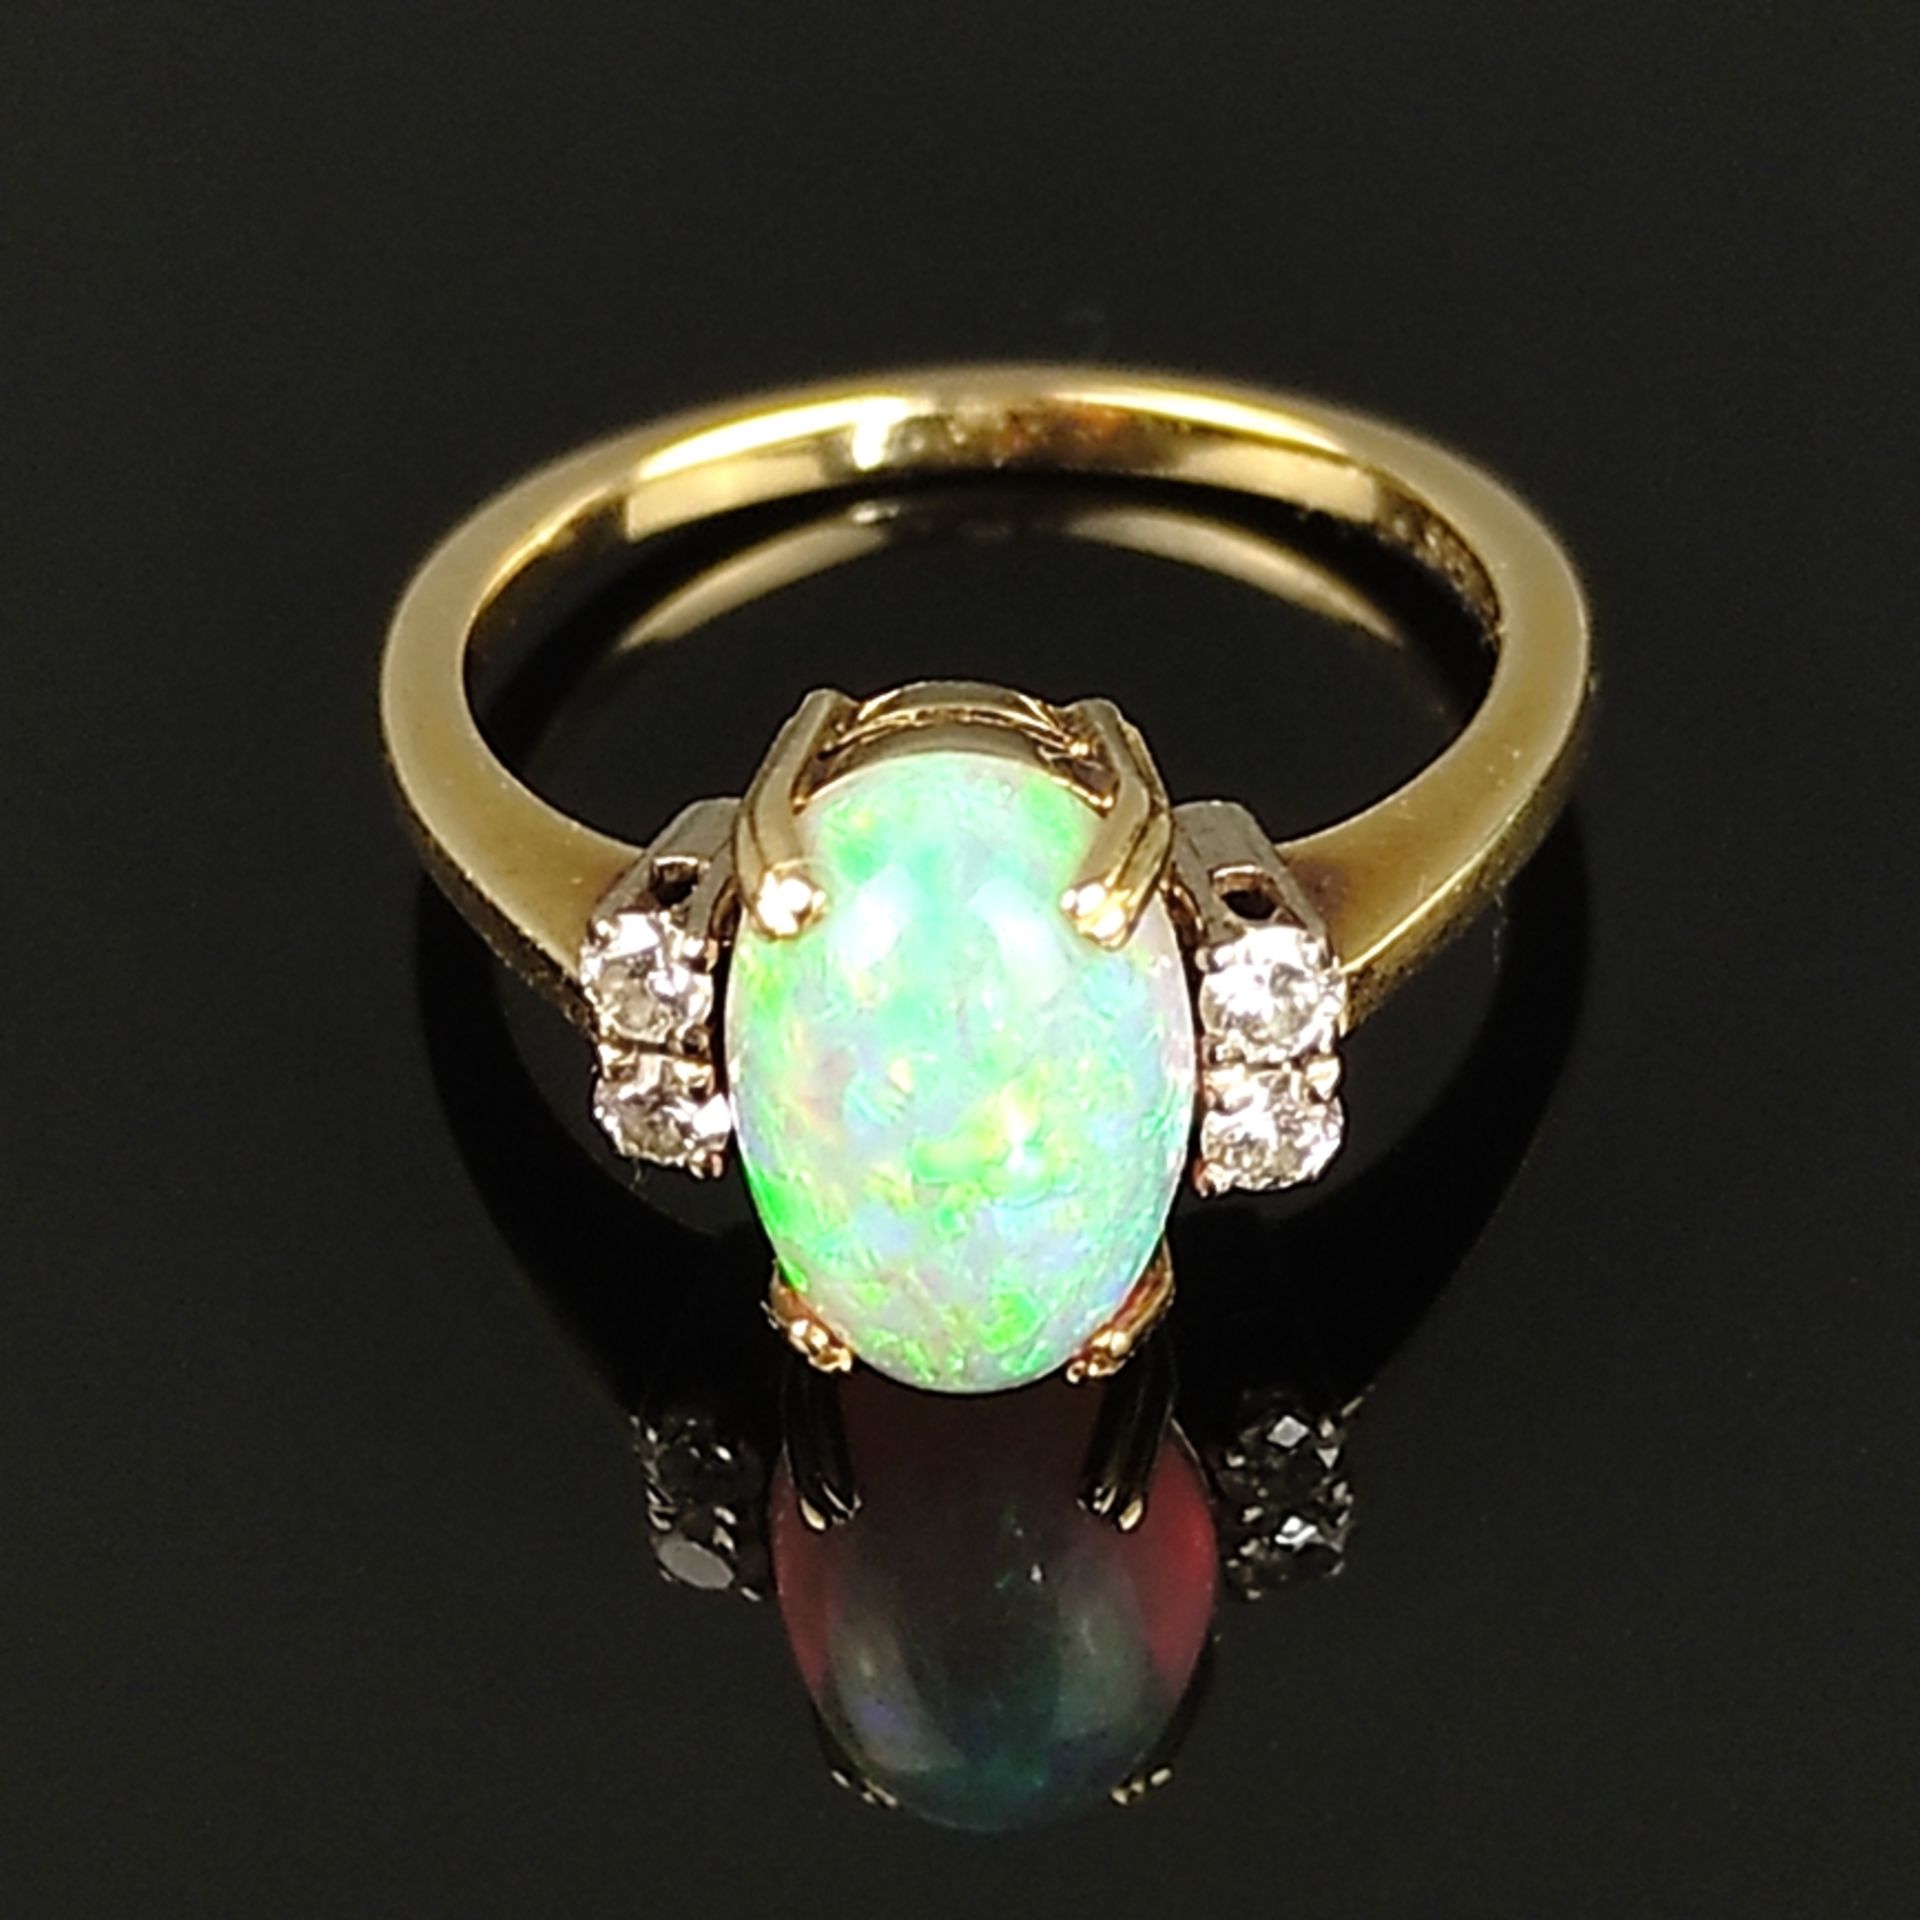 Eleganter Opal-Ring, 585/14K Gelbgold (punziert), 3,95g, mittig Opal-Cabochon (10,5x7x4mm) von inte - Bild 2 aus 3